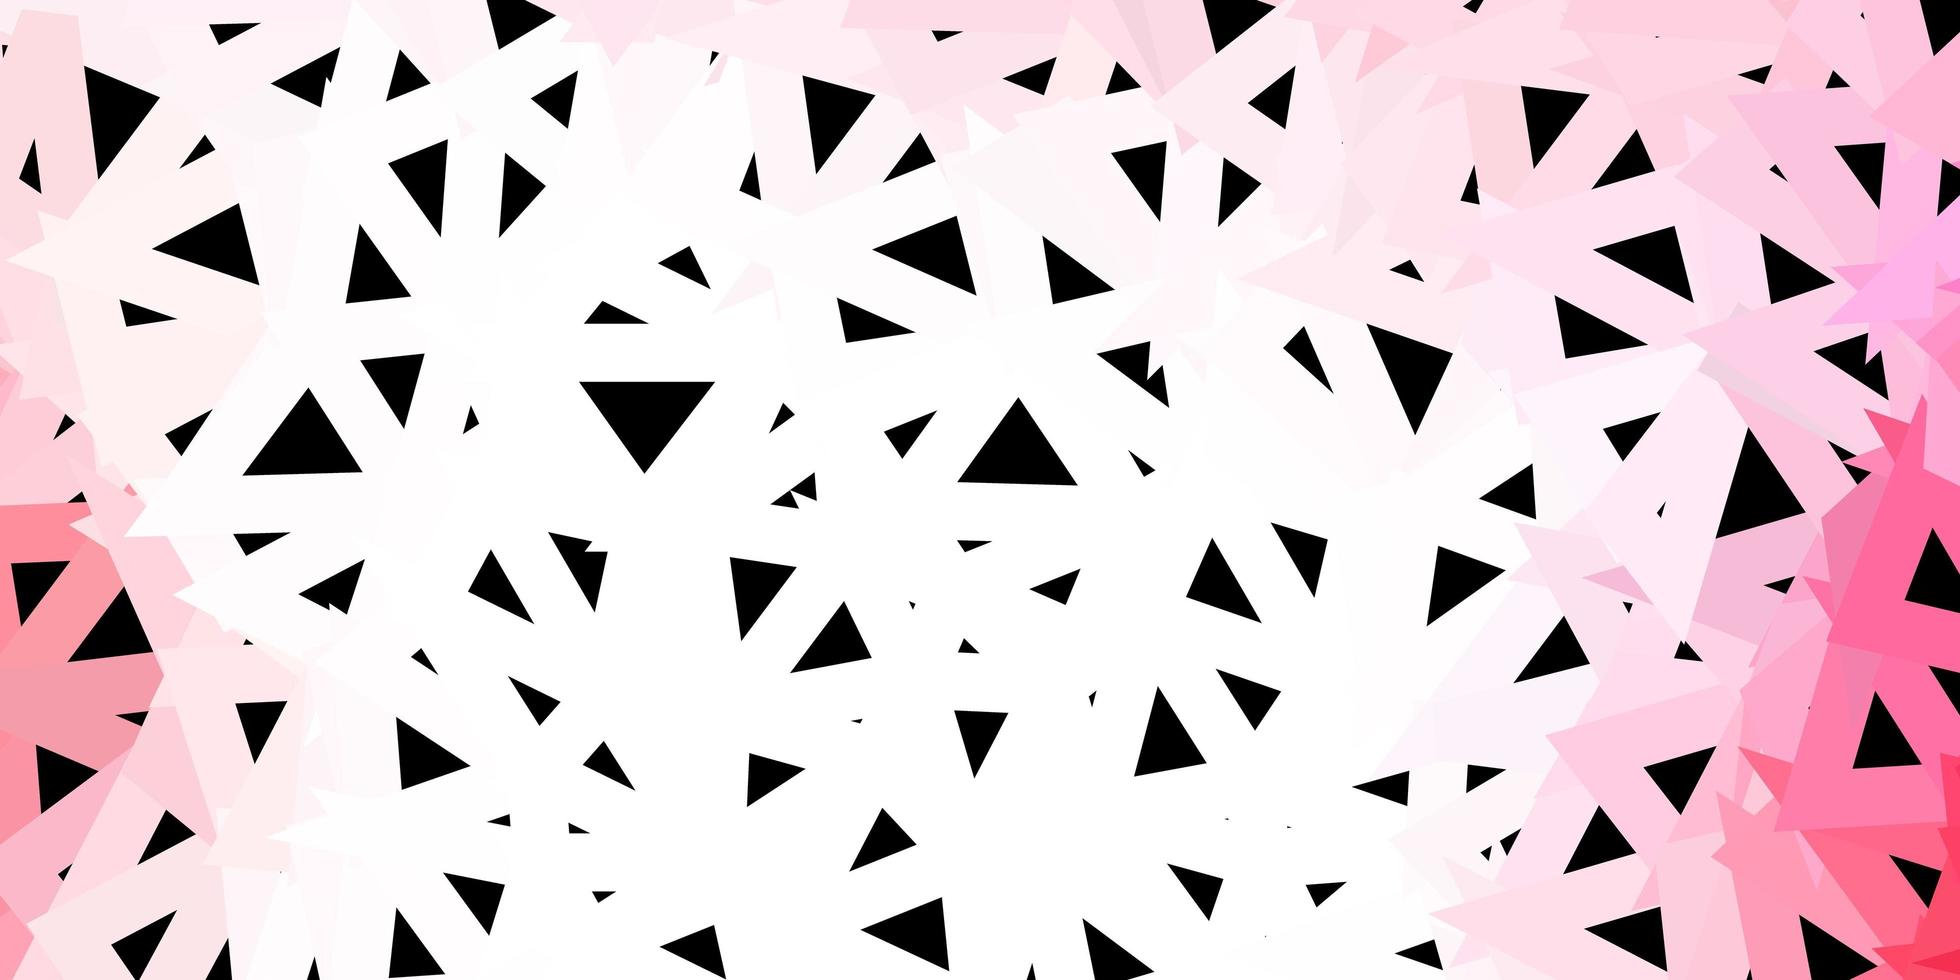 padrão poligonal de vetor rosa claro, vermelho.